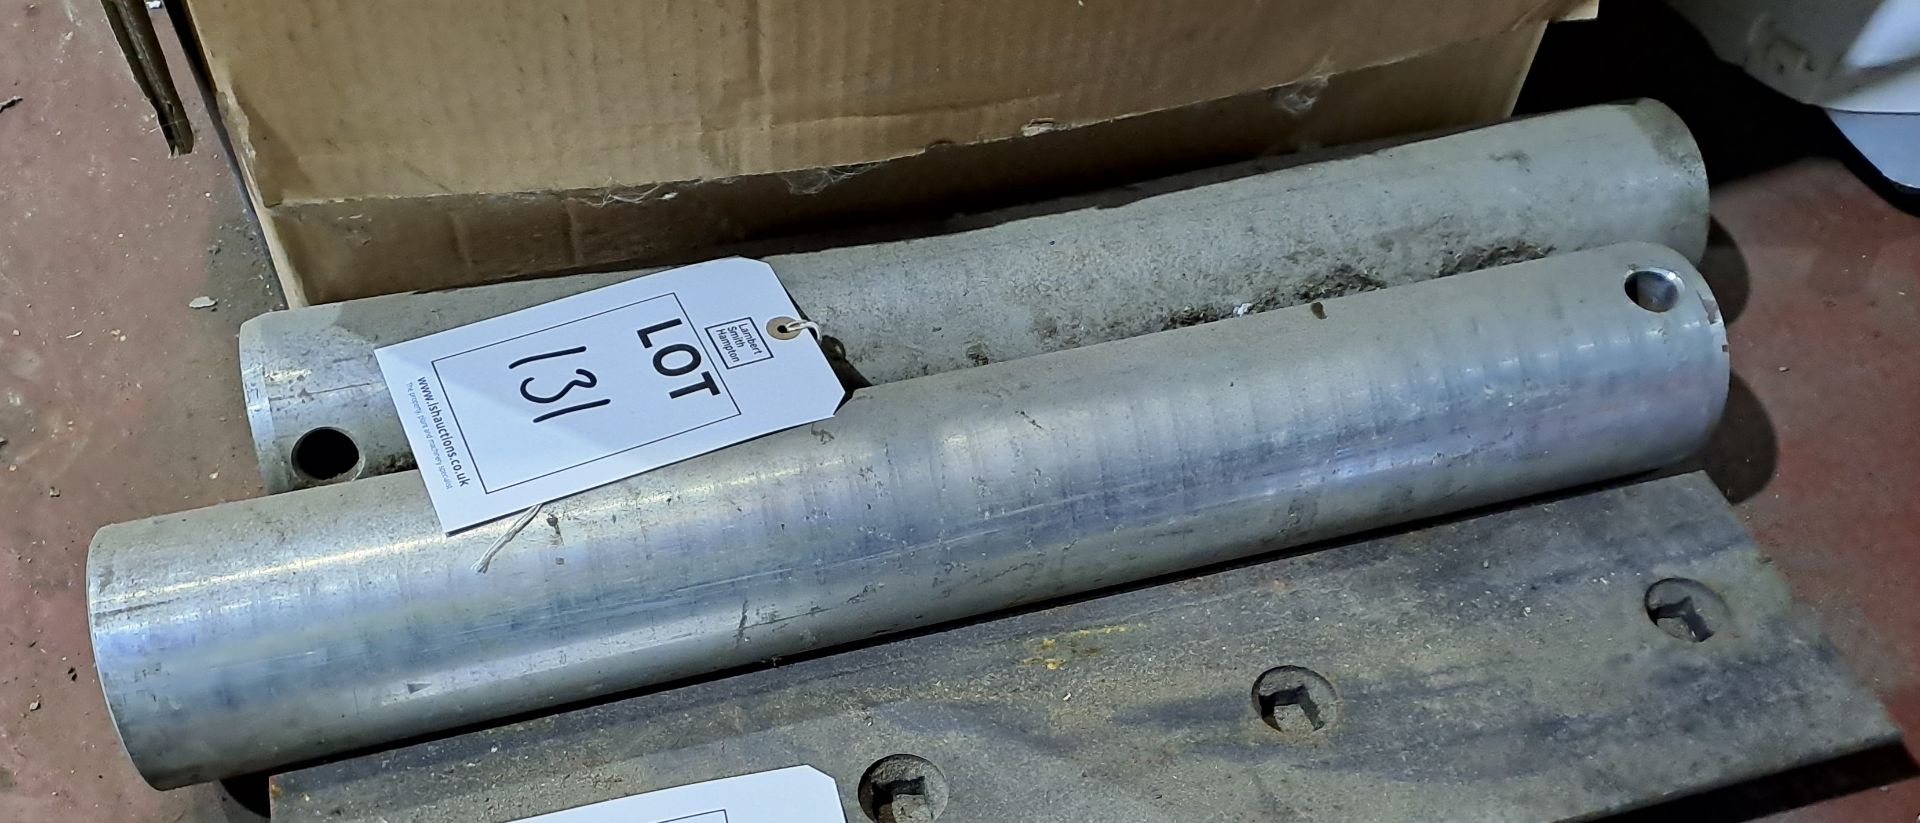 2 x Excavator pins, 100mm, unused - Image 2 of 2